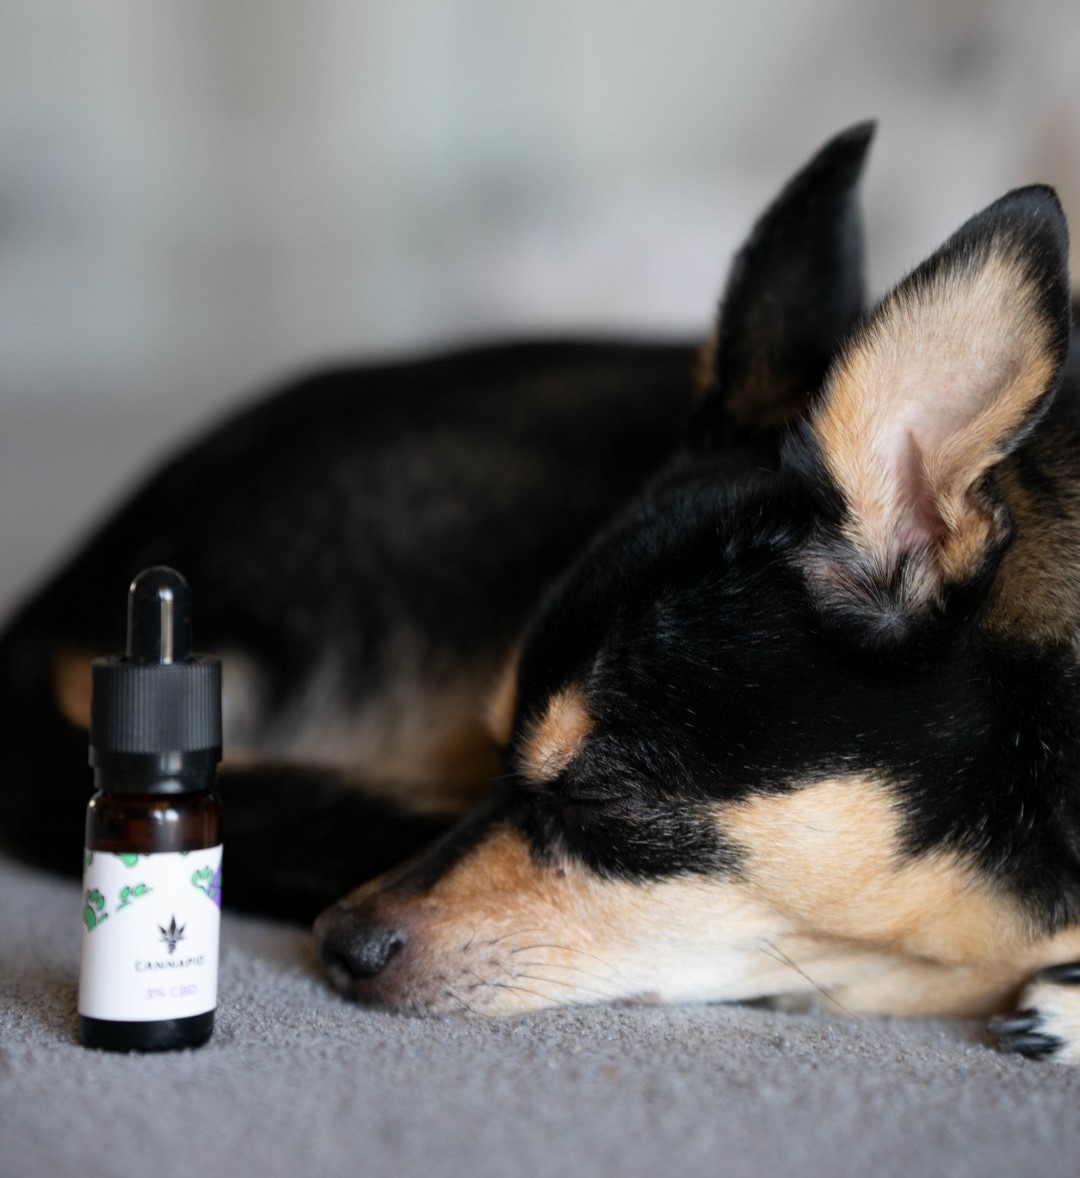 Pes odpočívá u Cannapio CBD oleje pro zvířata